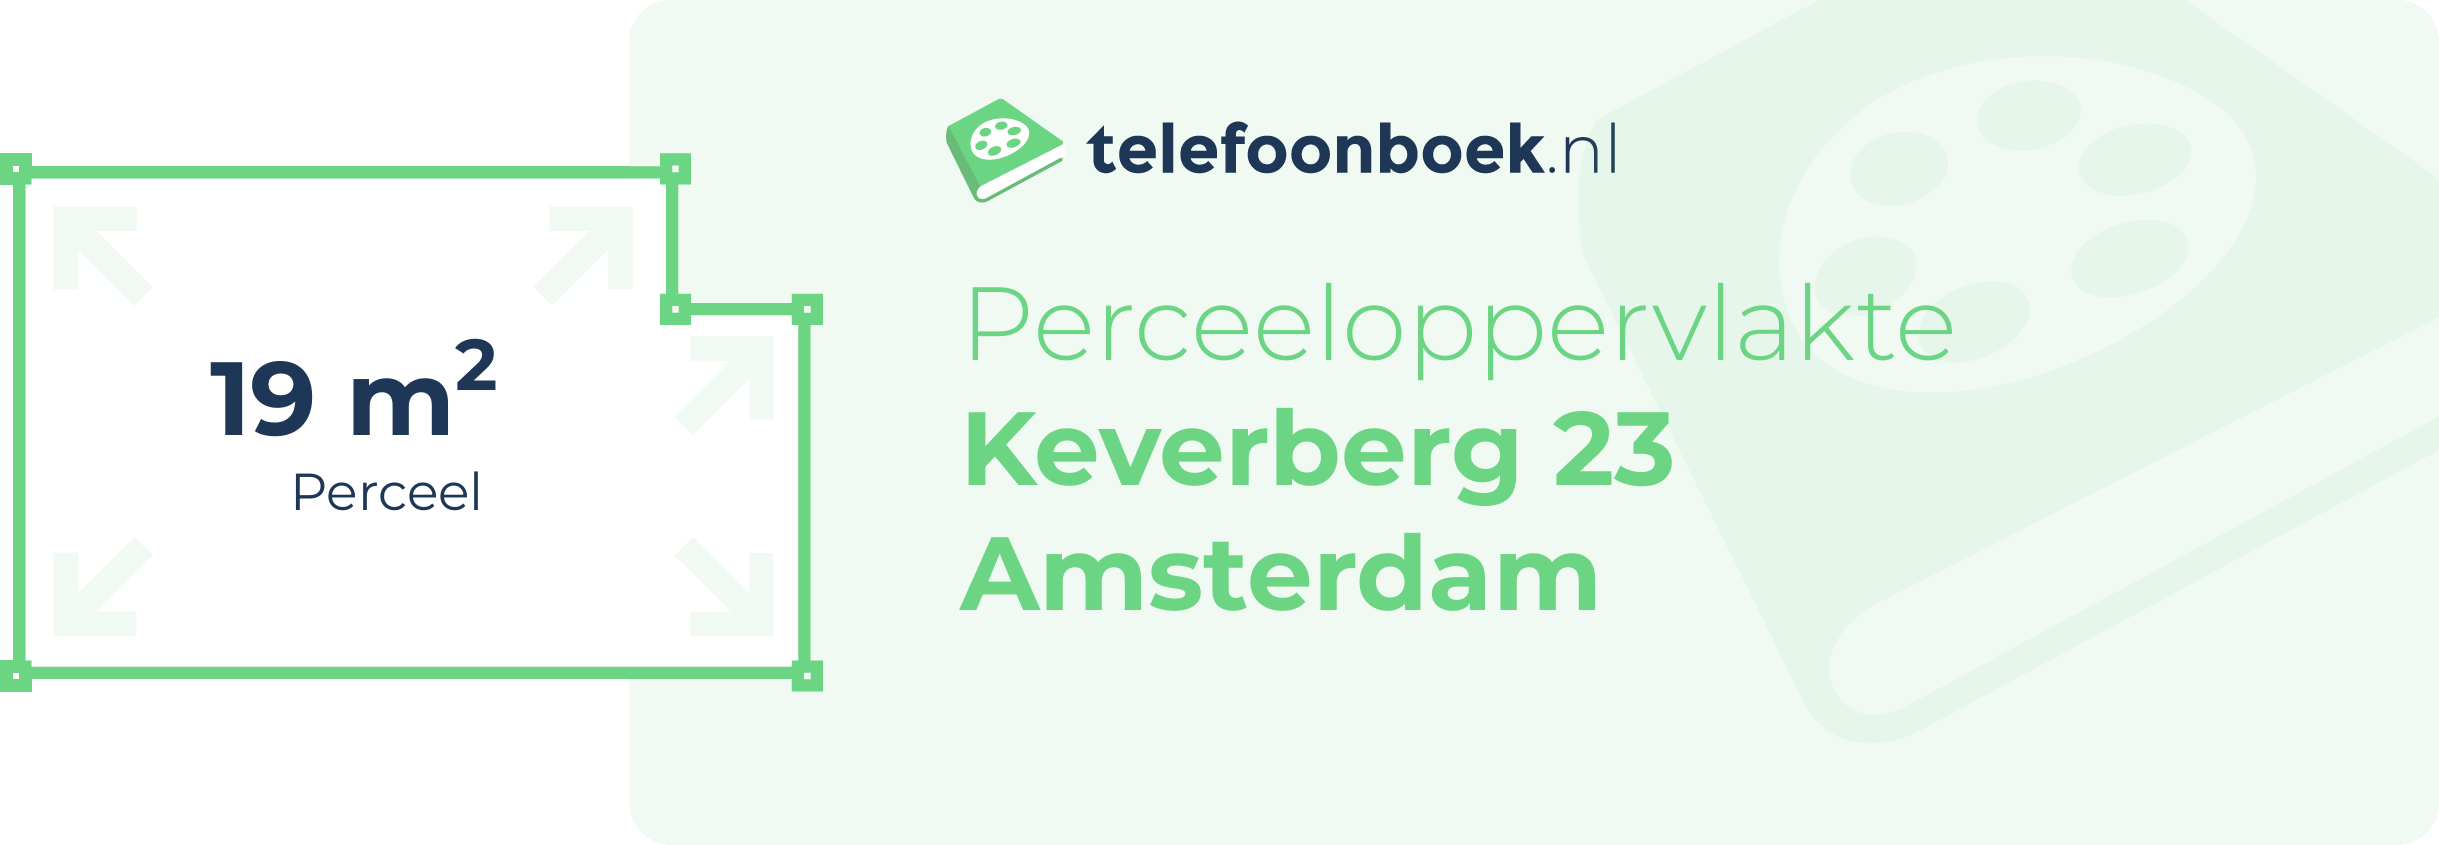 Perceeloppervlakte Keverberg 23 Amsterdam